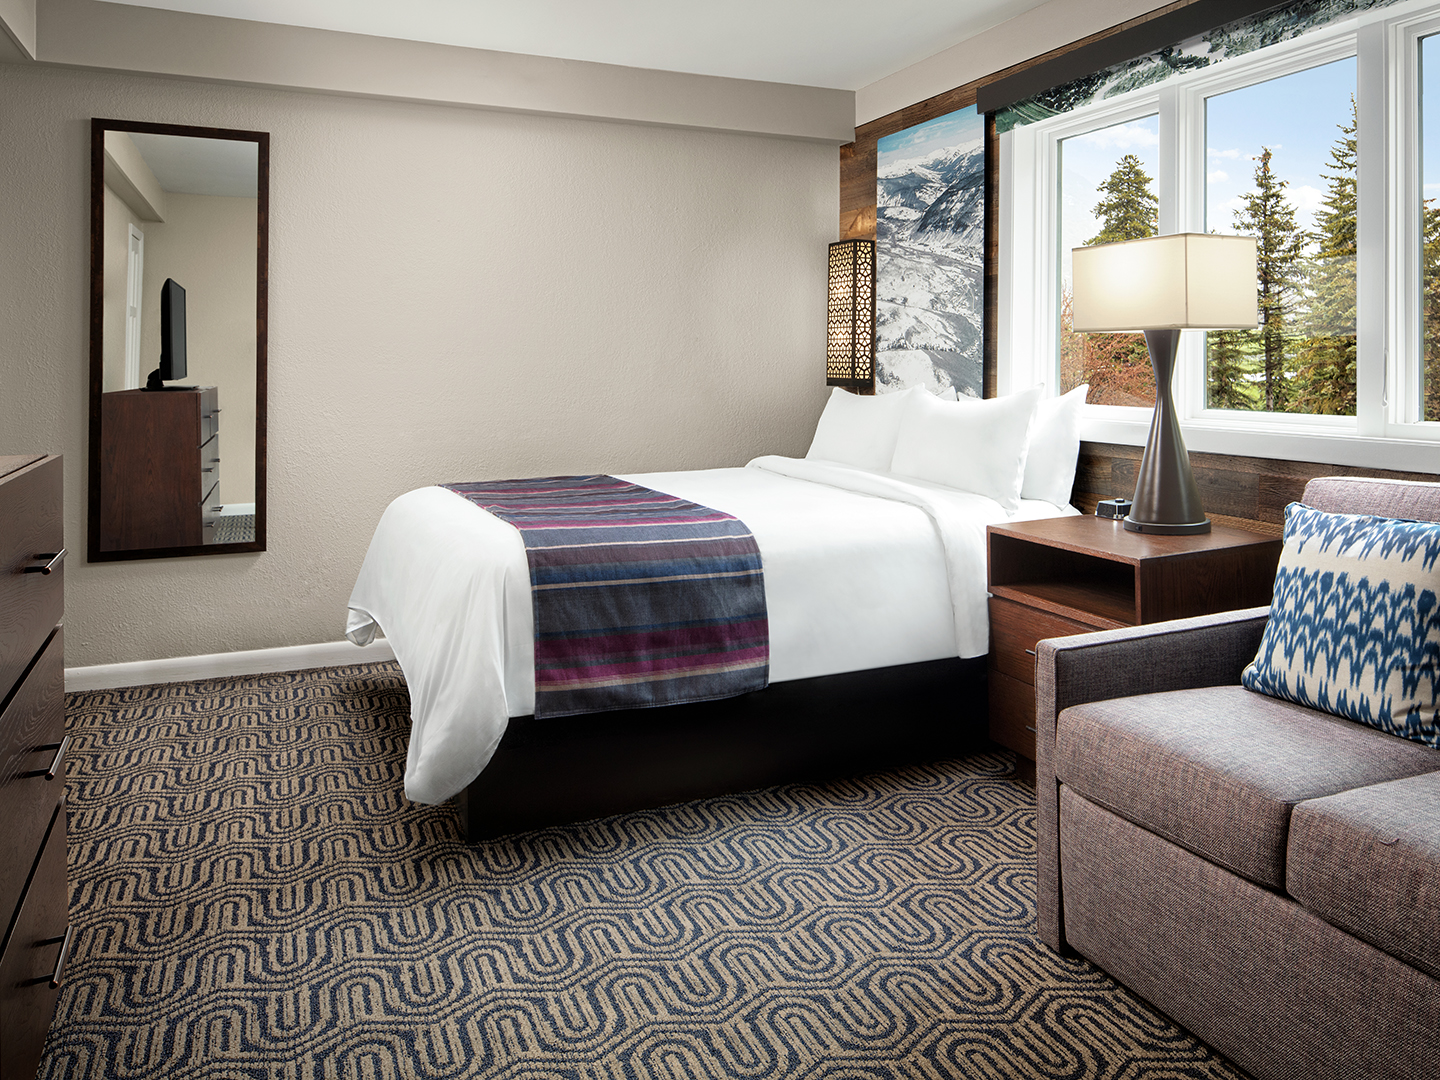 Marriott's StreamSide - Birch 2-Bedroom/2-Bath Villa, Guest Bedroom, Birch. Marriott's StreamSide - Birch is located in Vail, Colorado United States.